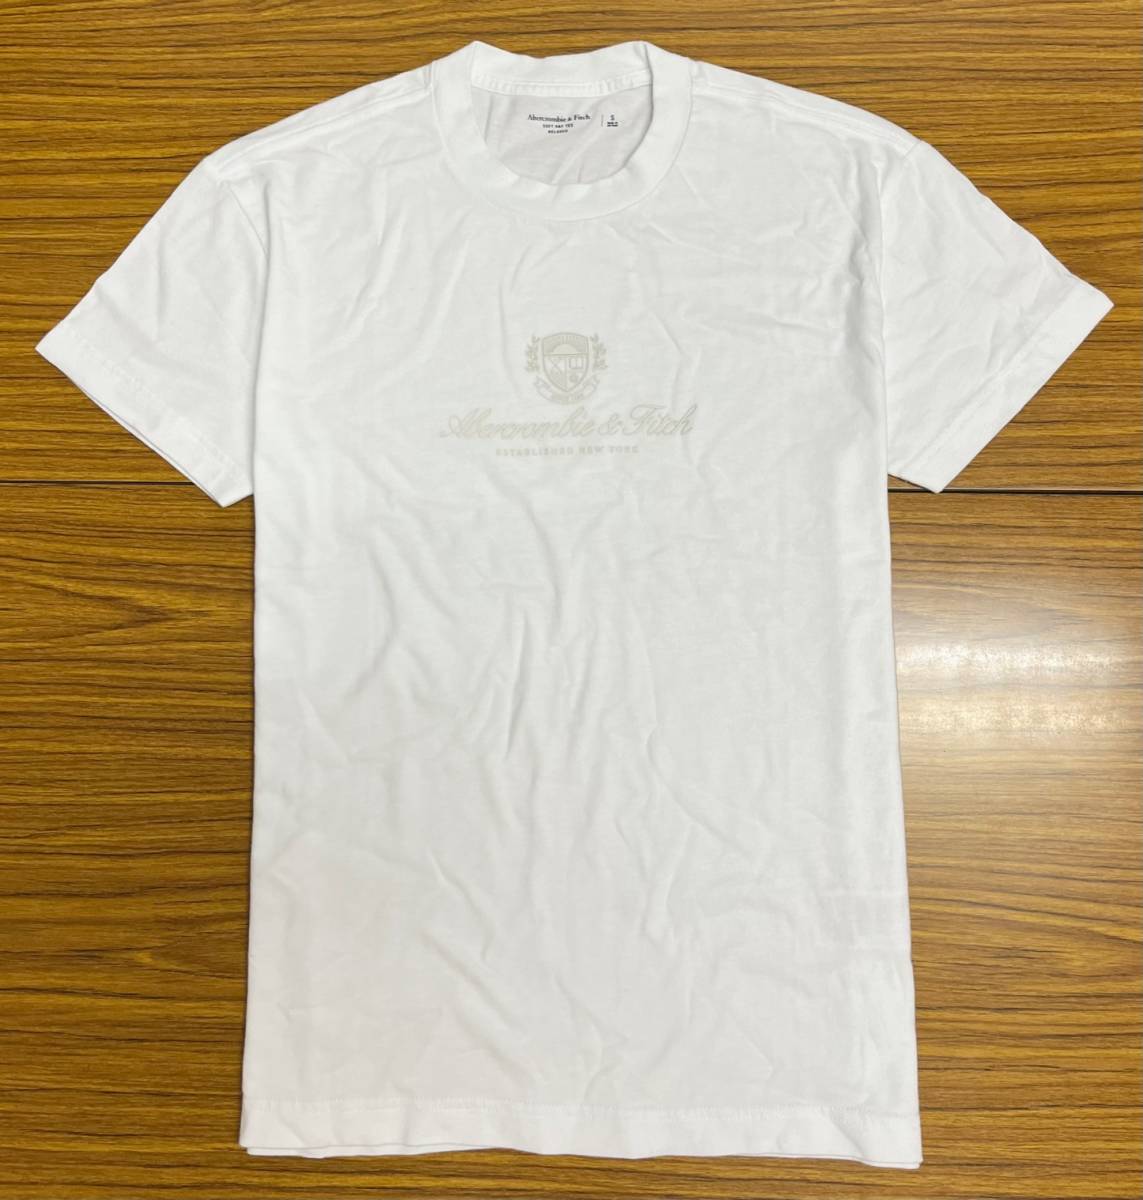 ★未使用タグ付★アバクロ メンズ コットン 半袖Tシャツ ロゴ ホワイト Sサイズ (A010)の画像1